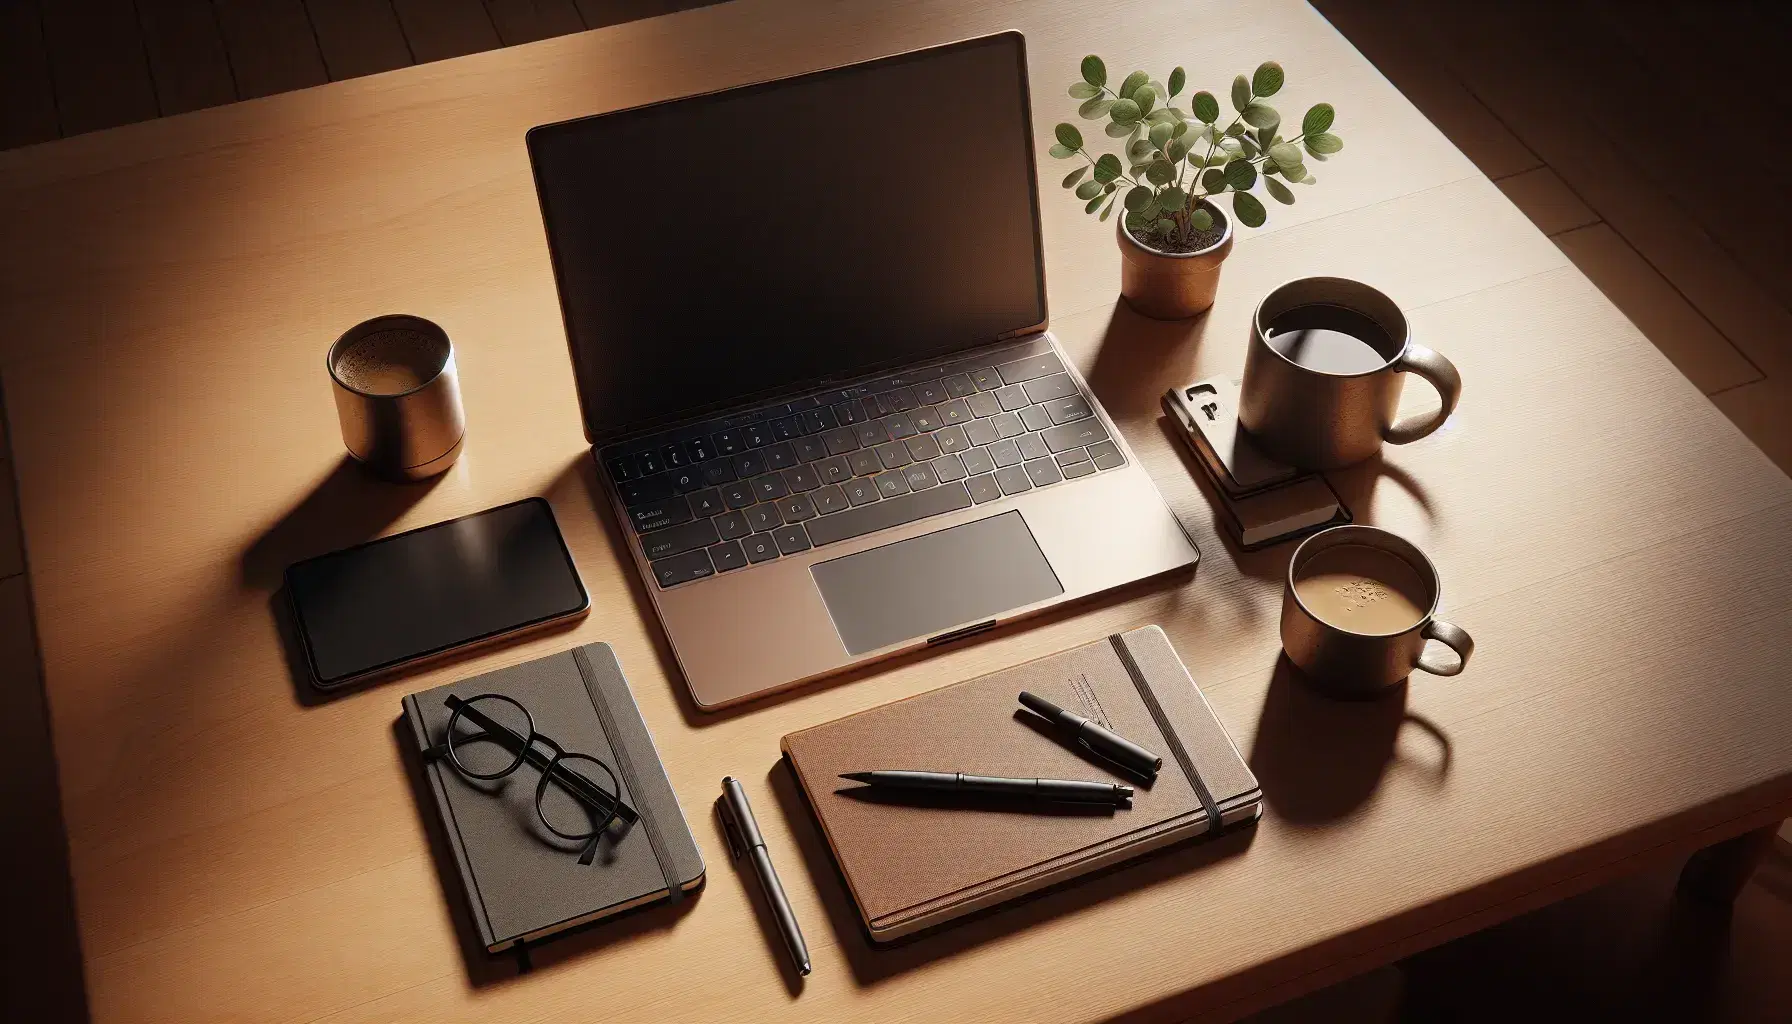 Mesa de madera clara con portátil abierto, taza de café, cuaderno con bolígrafo y planta en maceta, todo bajo luz natural suave.